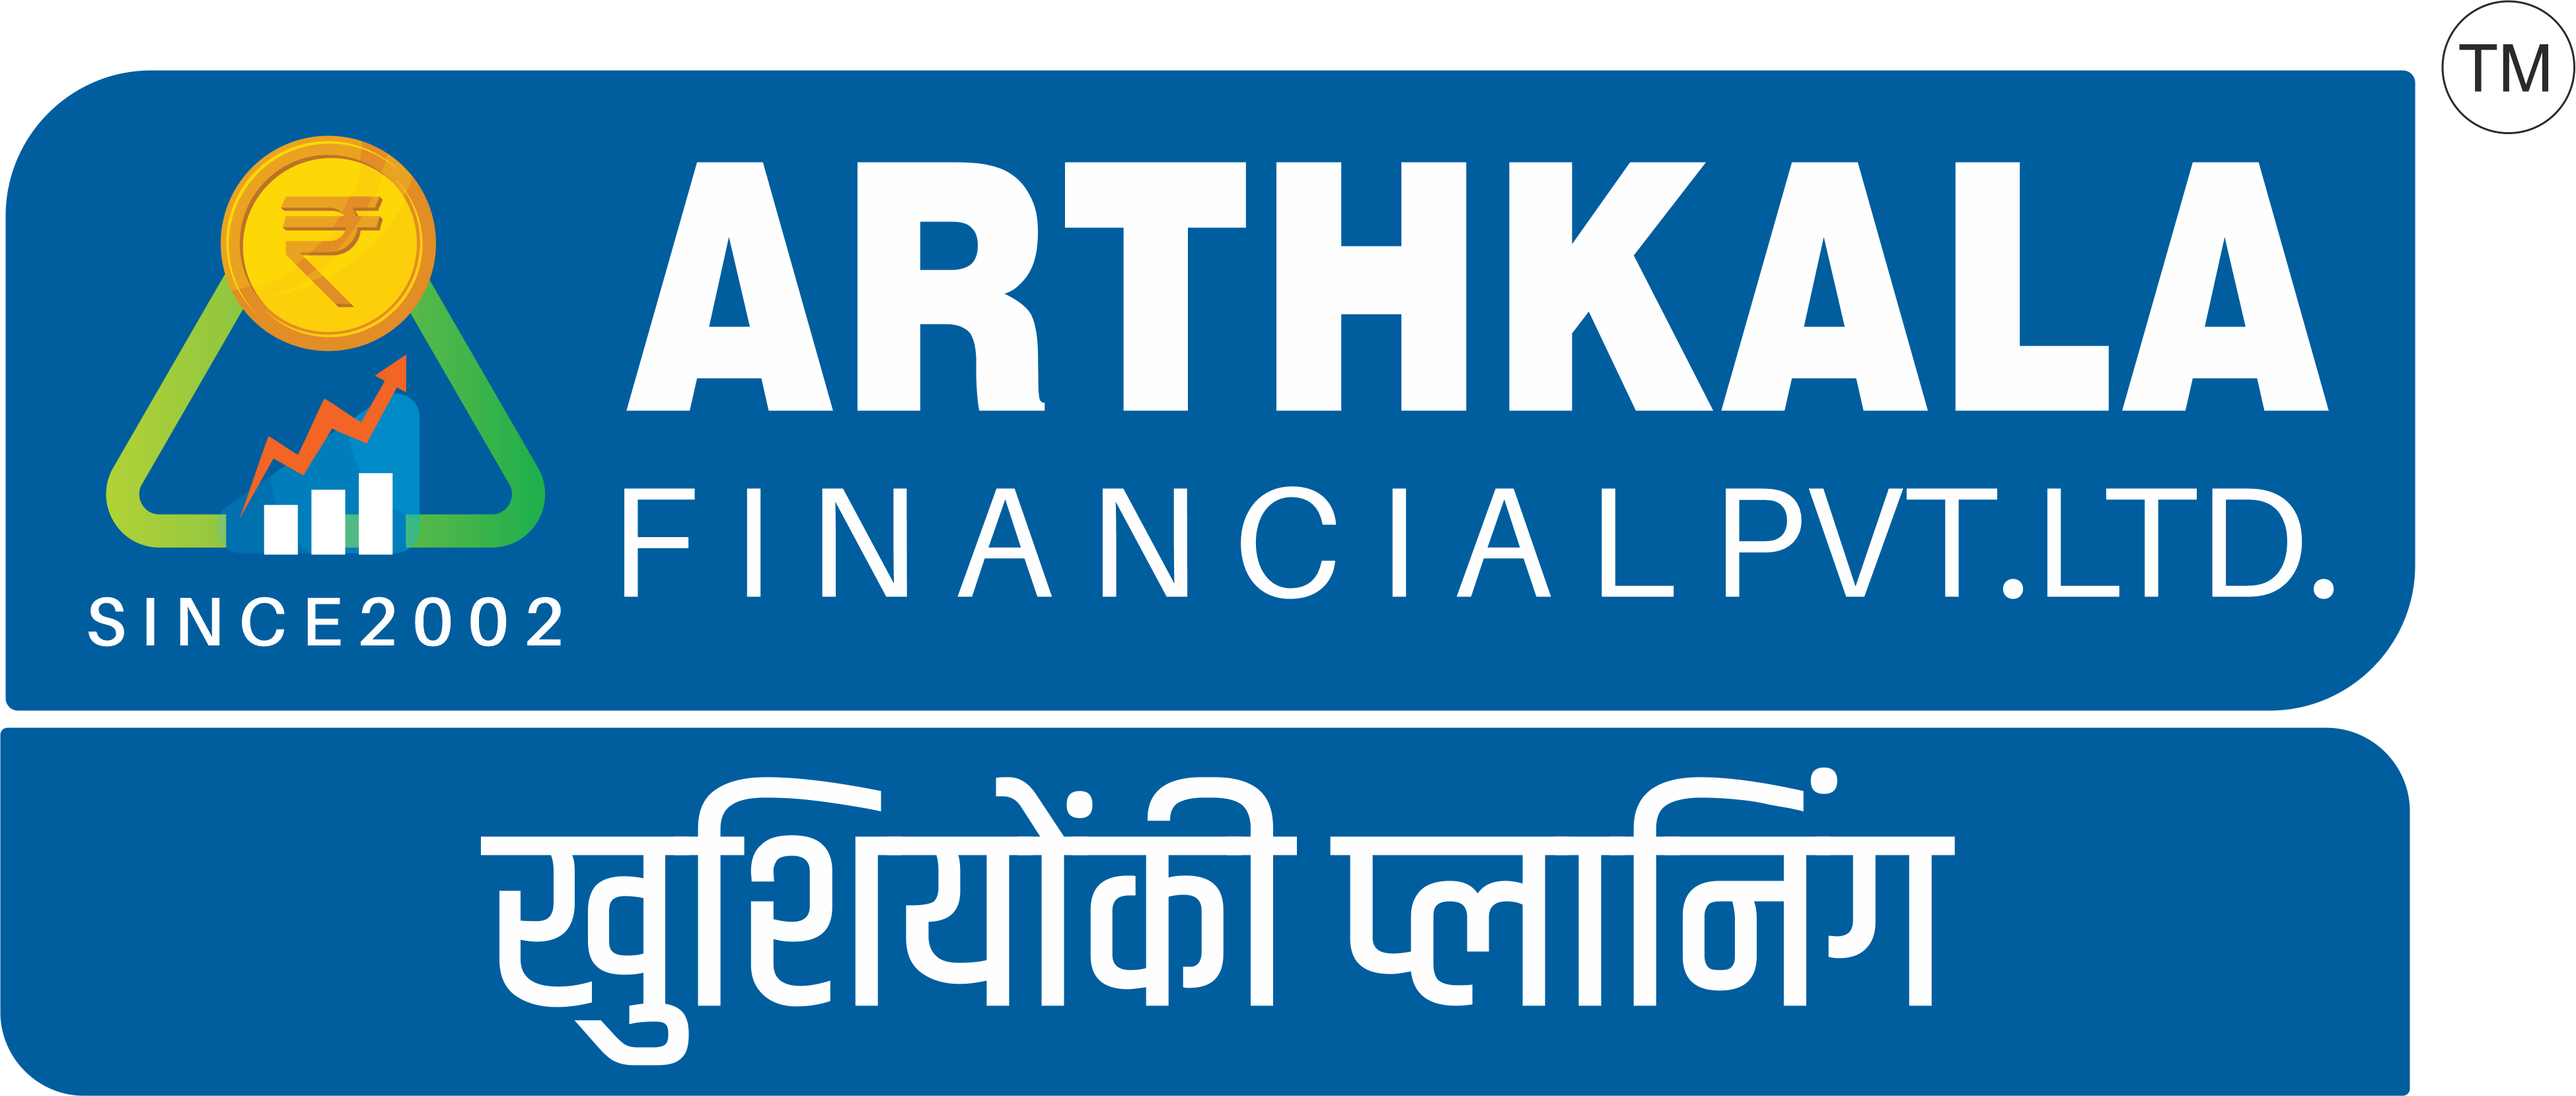 arthakala financial